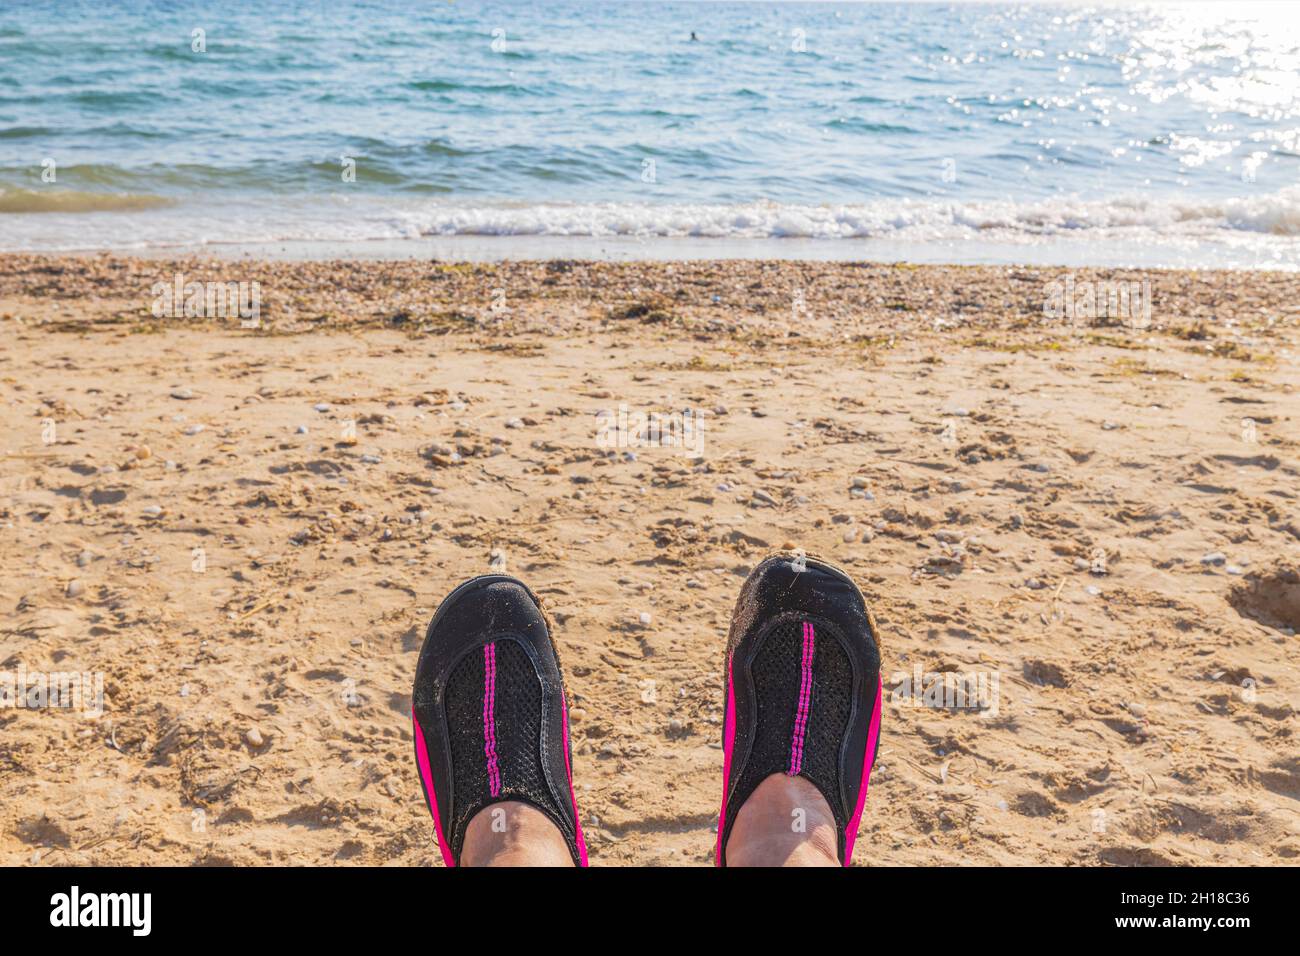 Сlose Blick auf Badeschuhe auf den Füßen eines Mannes vor dem Hintergrund des weißen Sandstrandes Meer. Griechenland. Stockfoto